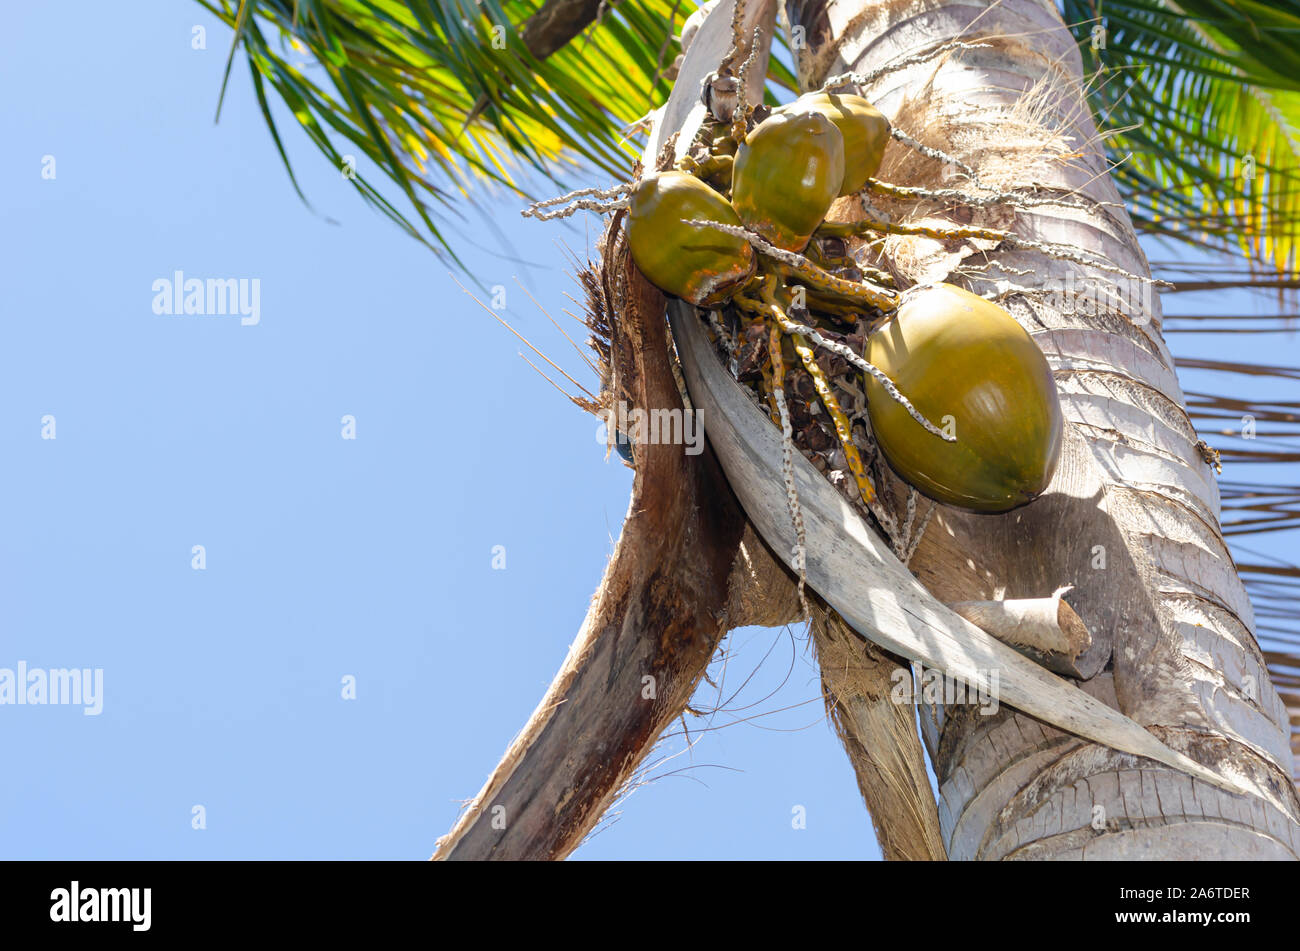 Herabfallende Kokosnuss Bündel unterstützt durch gefallene Blätter Stockfoto